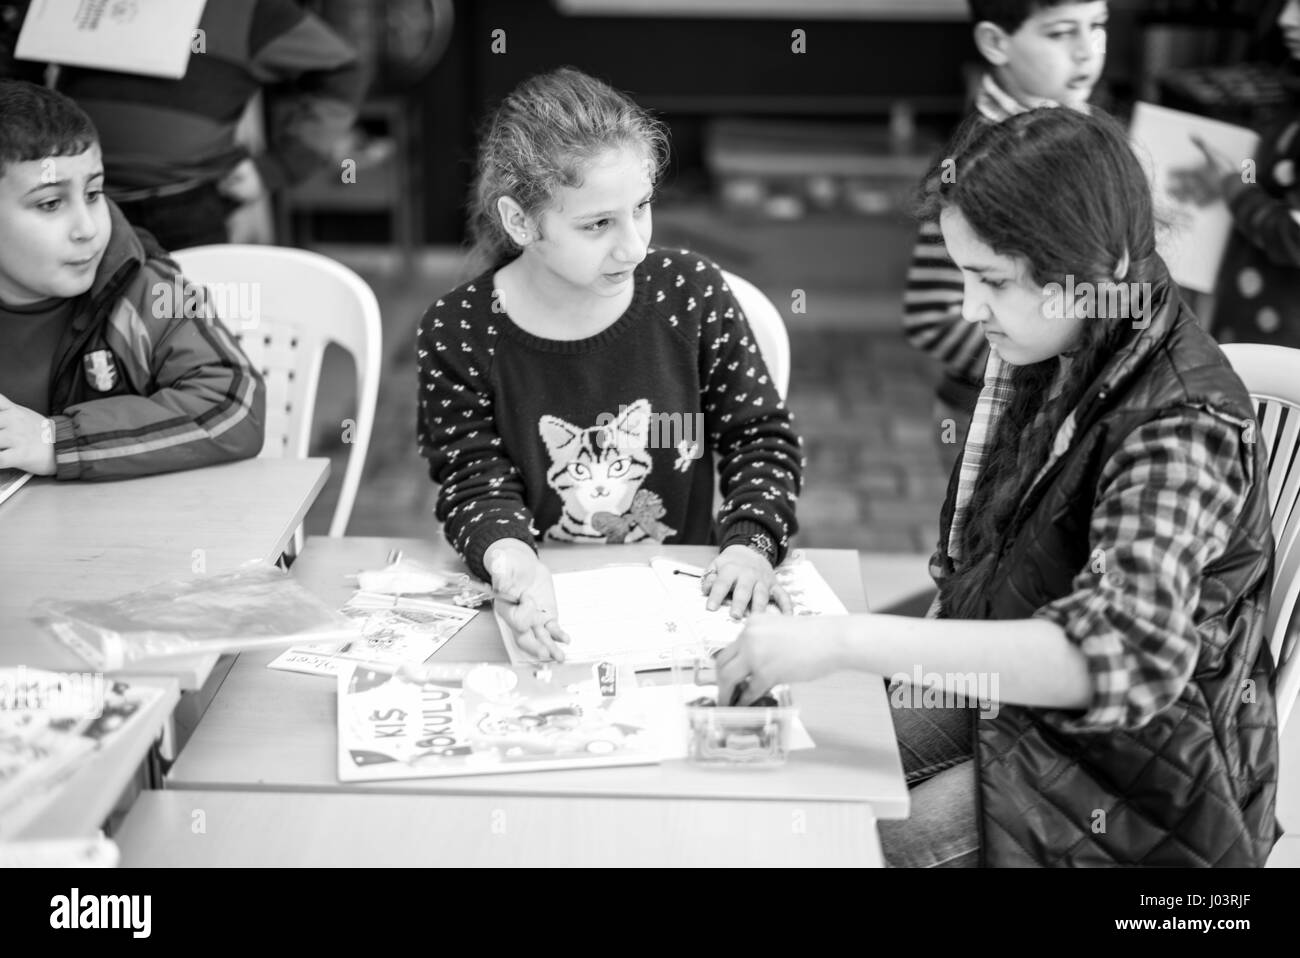 L'Olivier école enseigne le Turc d'enfants syriens réfugiés à Istanbul, Turquie. Banque D'Images